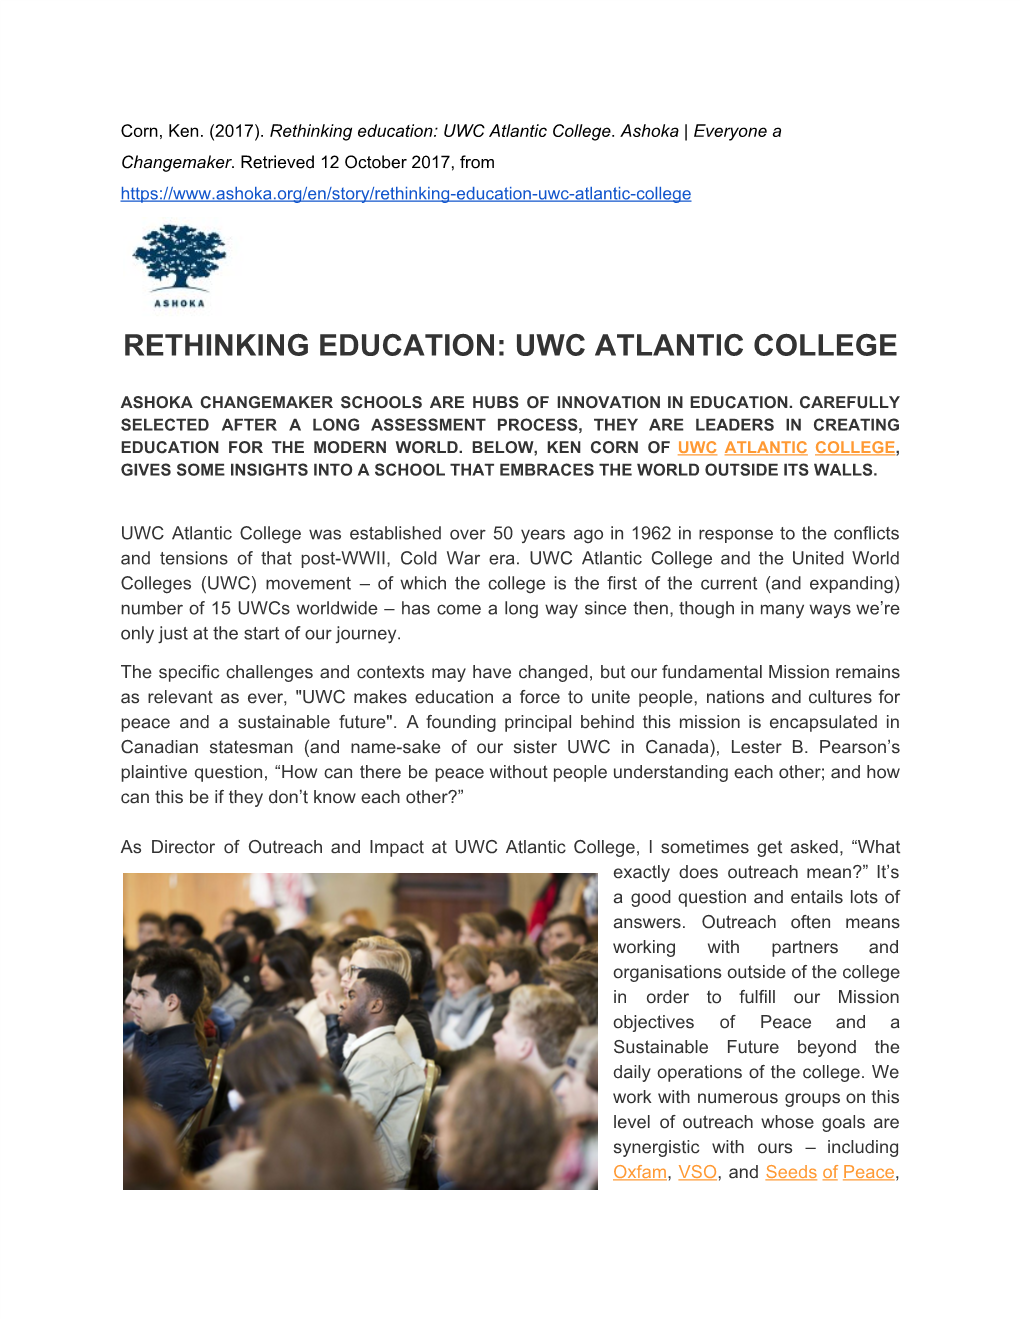 Rethinking​ ​Education:​ ​Uwc​ ​Atlantic​ ​College